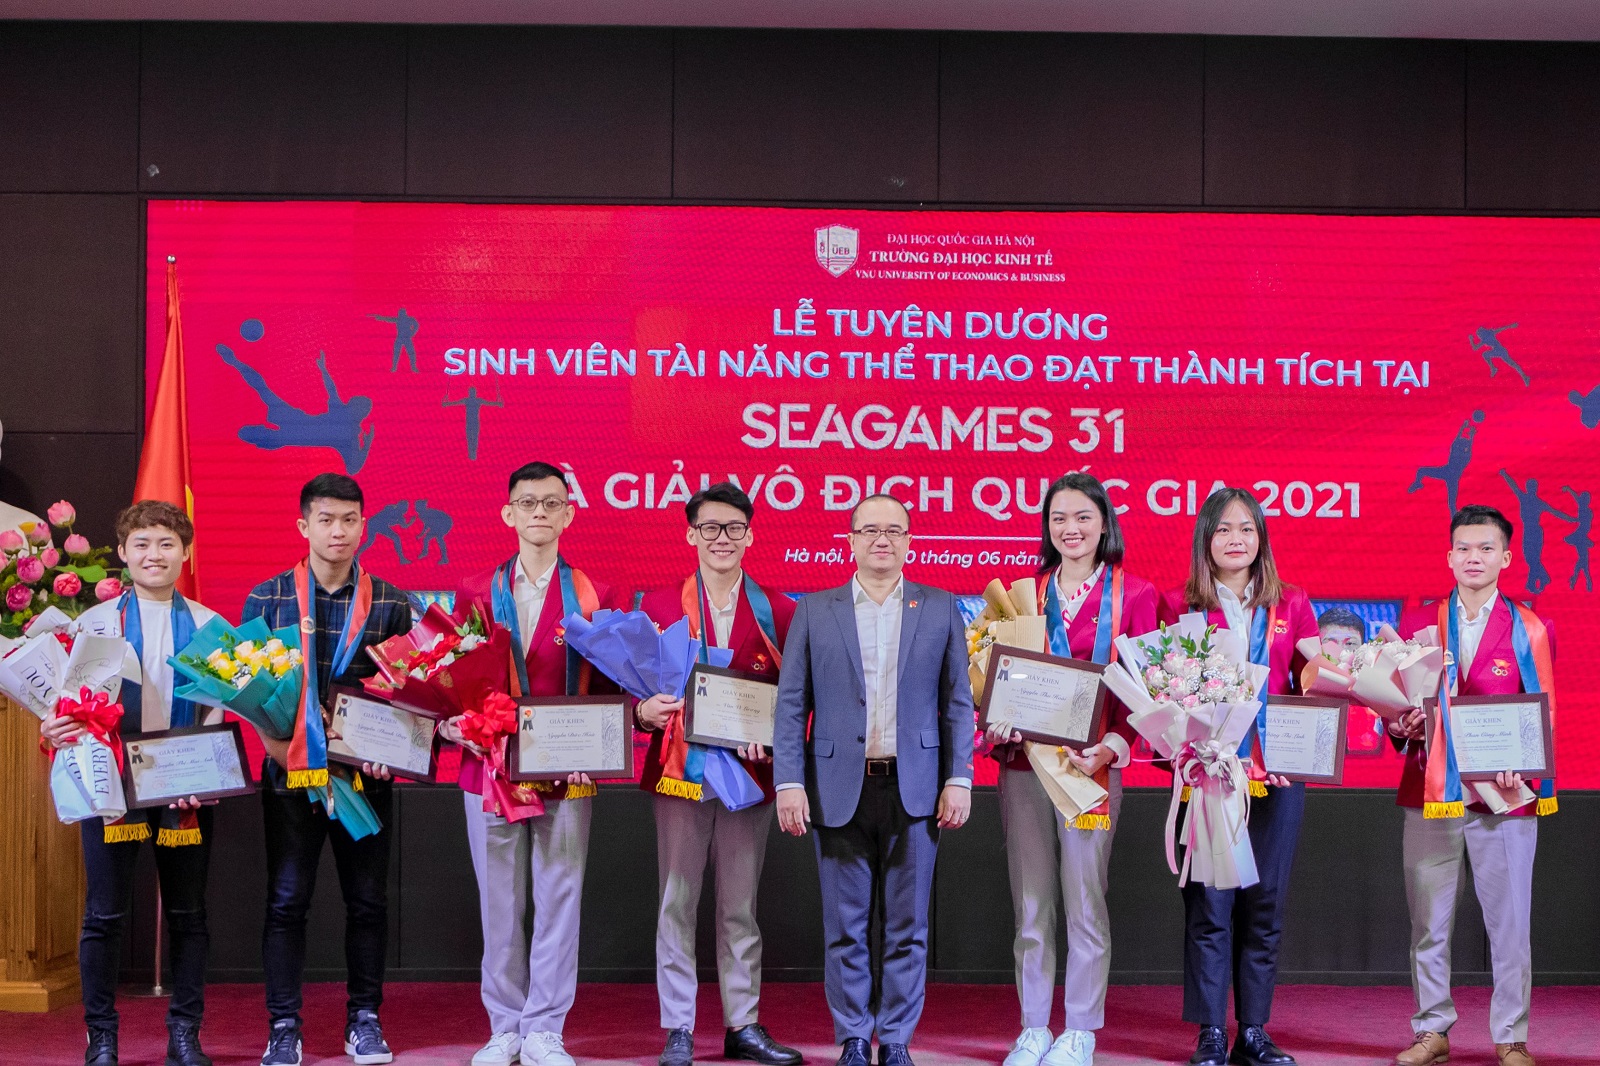 Trường Đại học Kinh tế, ĐHQGHN vinh danh các sinh viên - vận động viên UEB đạt thành tích cao trong SEA Games 31 và các giải Vô địch Quốc gia